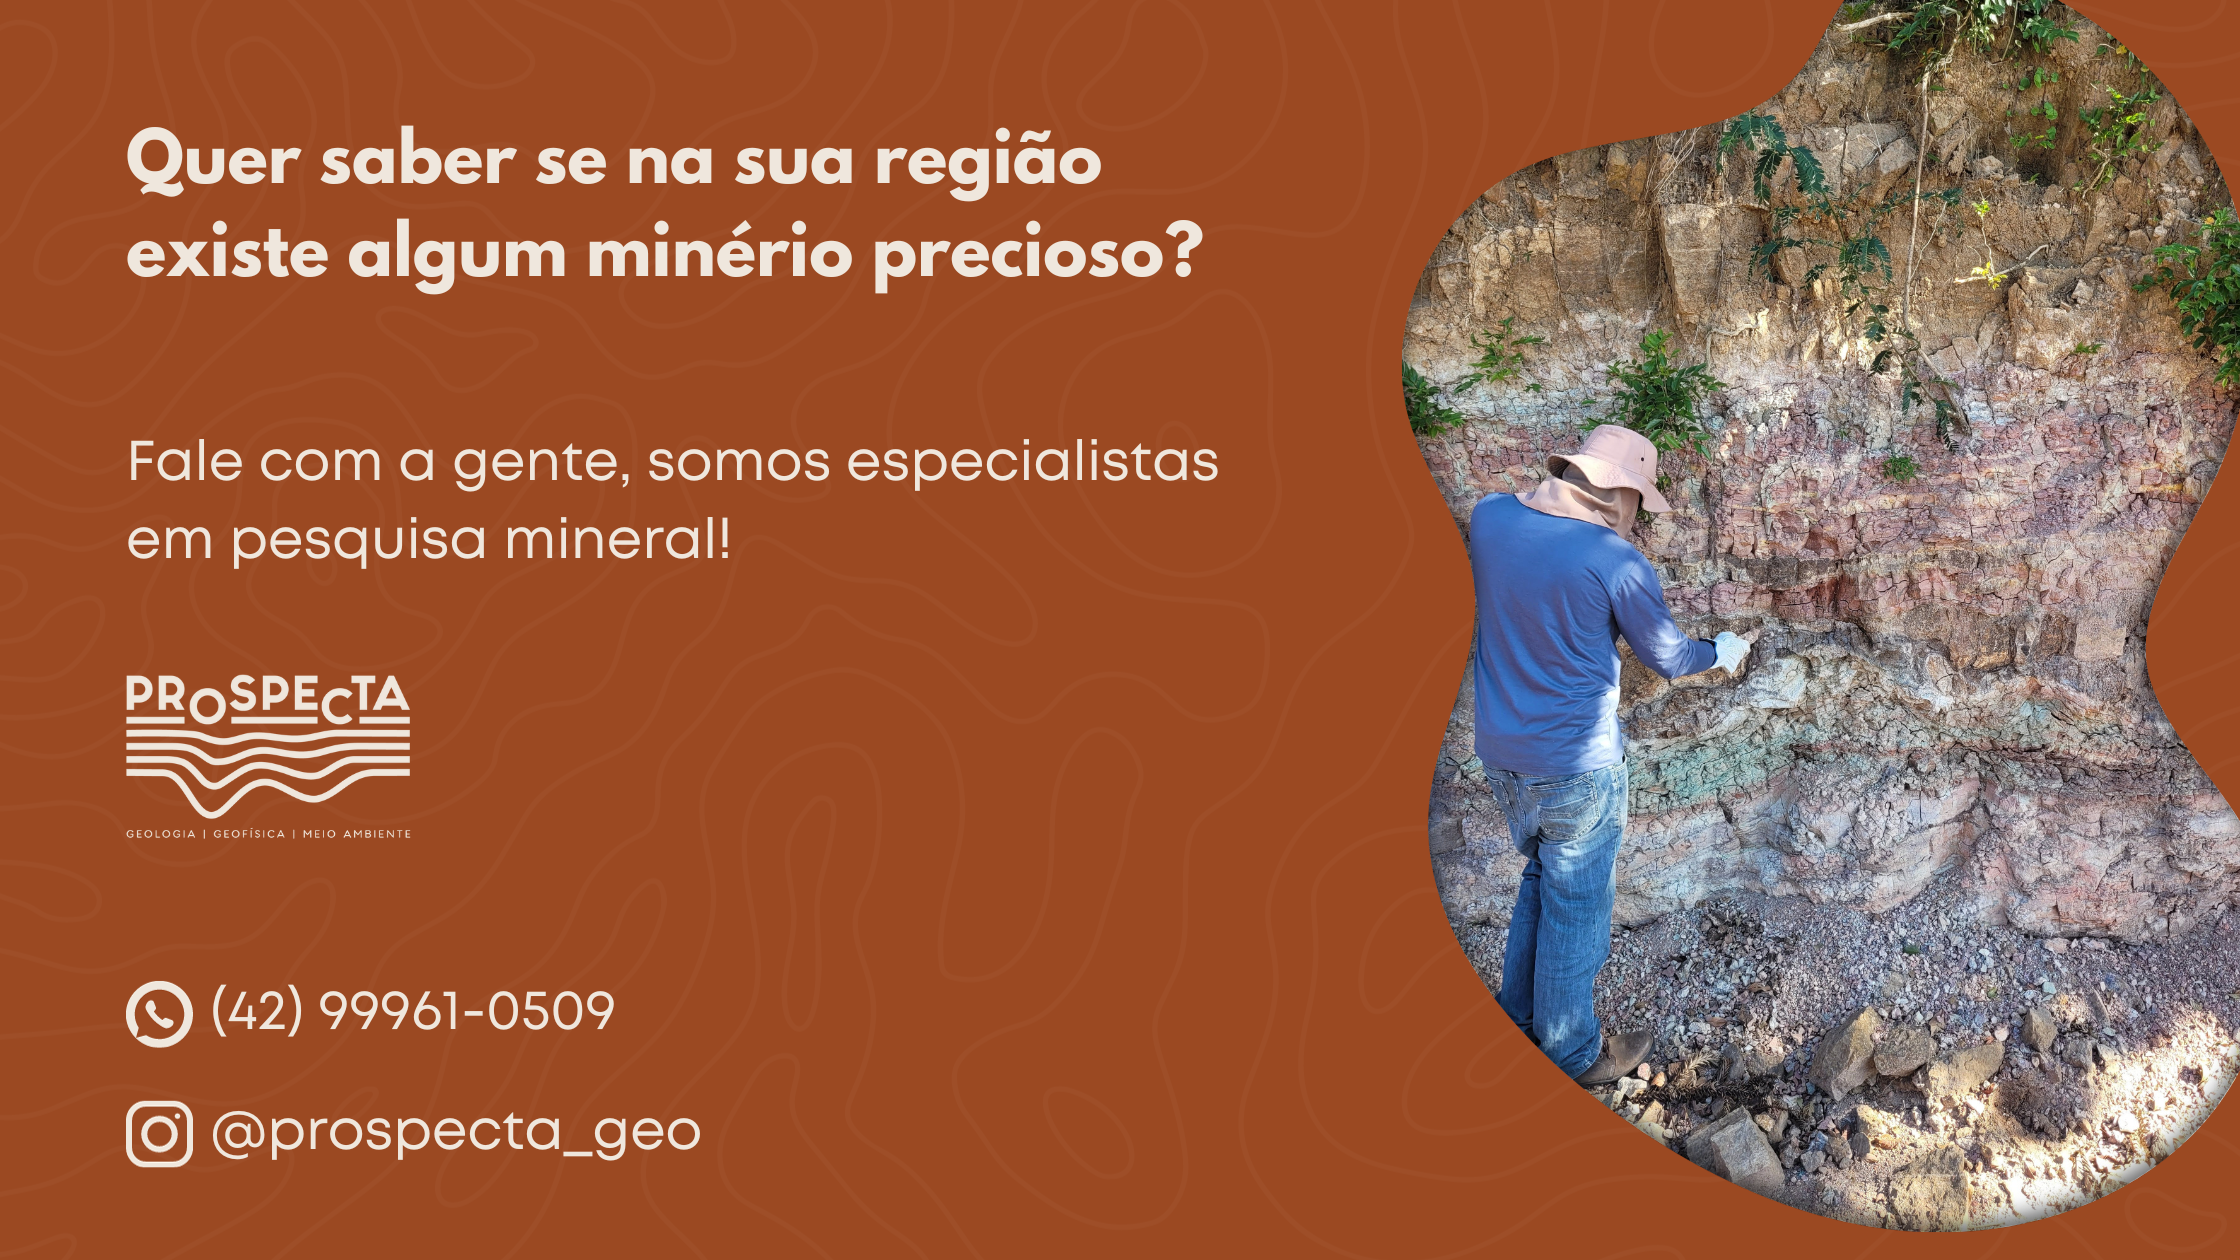 Especialistas em pesquisa mineral